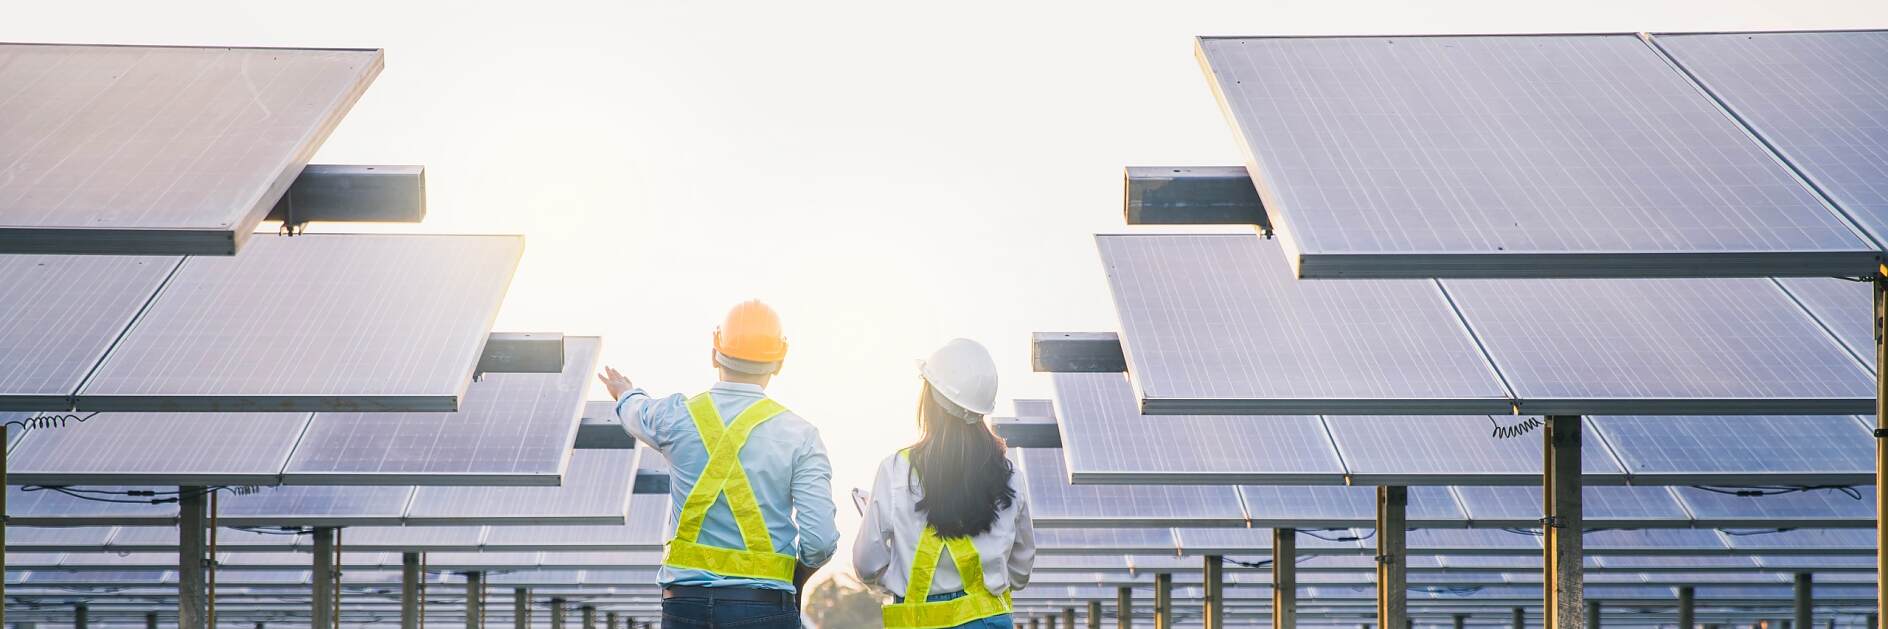 Erkek ve kadın çalışan bakım panelleri güneş enerjisi toplarken. Güneş enerjisi endüstrisinde kontrol ve bakım ekipmanları üzerinde çalışan mühendis.